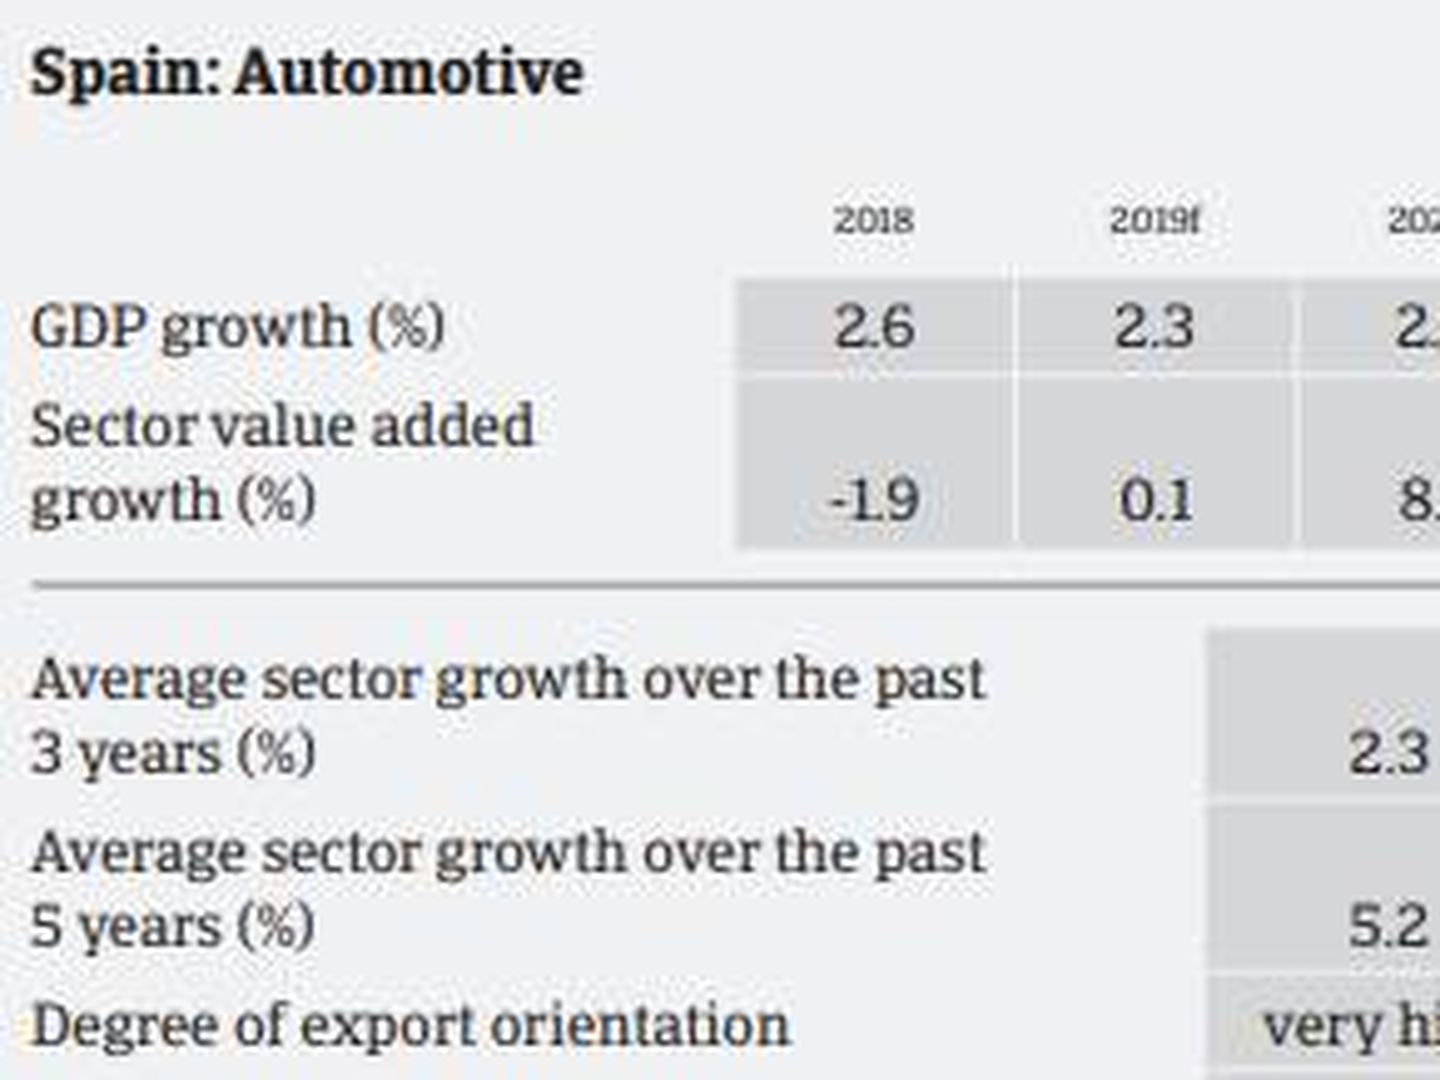 Ficha del informe de Crédito y Caución 'Focus on automotive performance and outlook'.